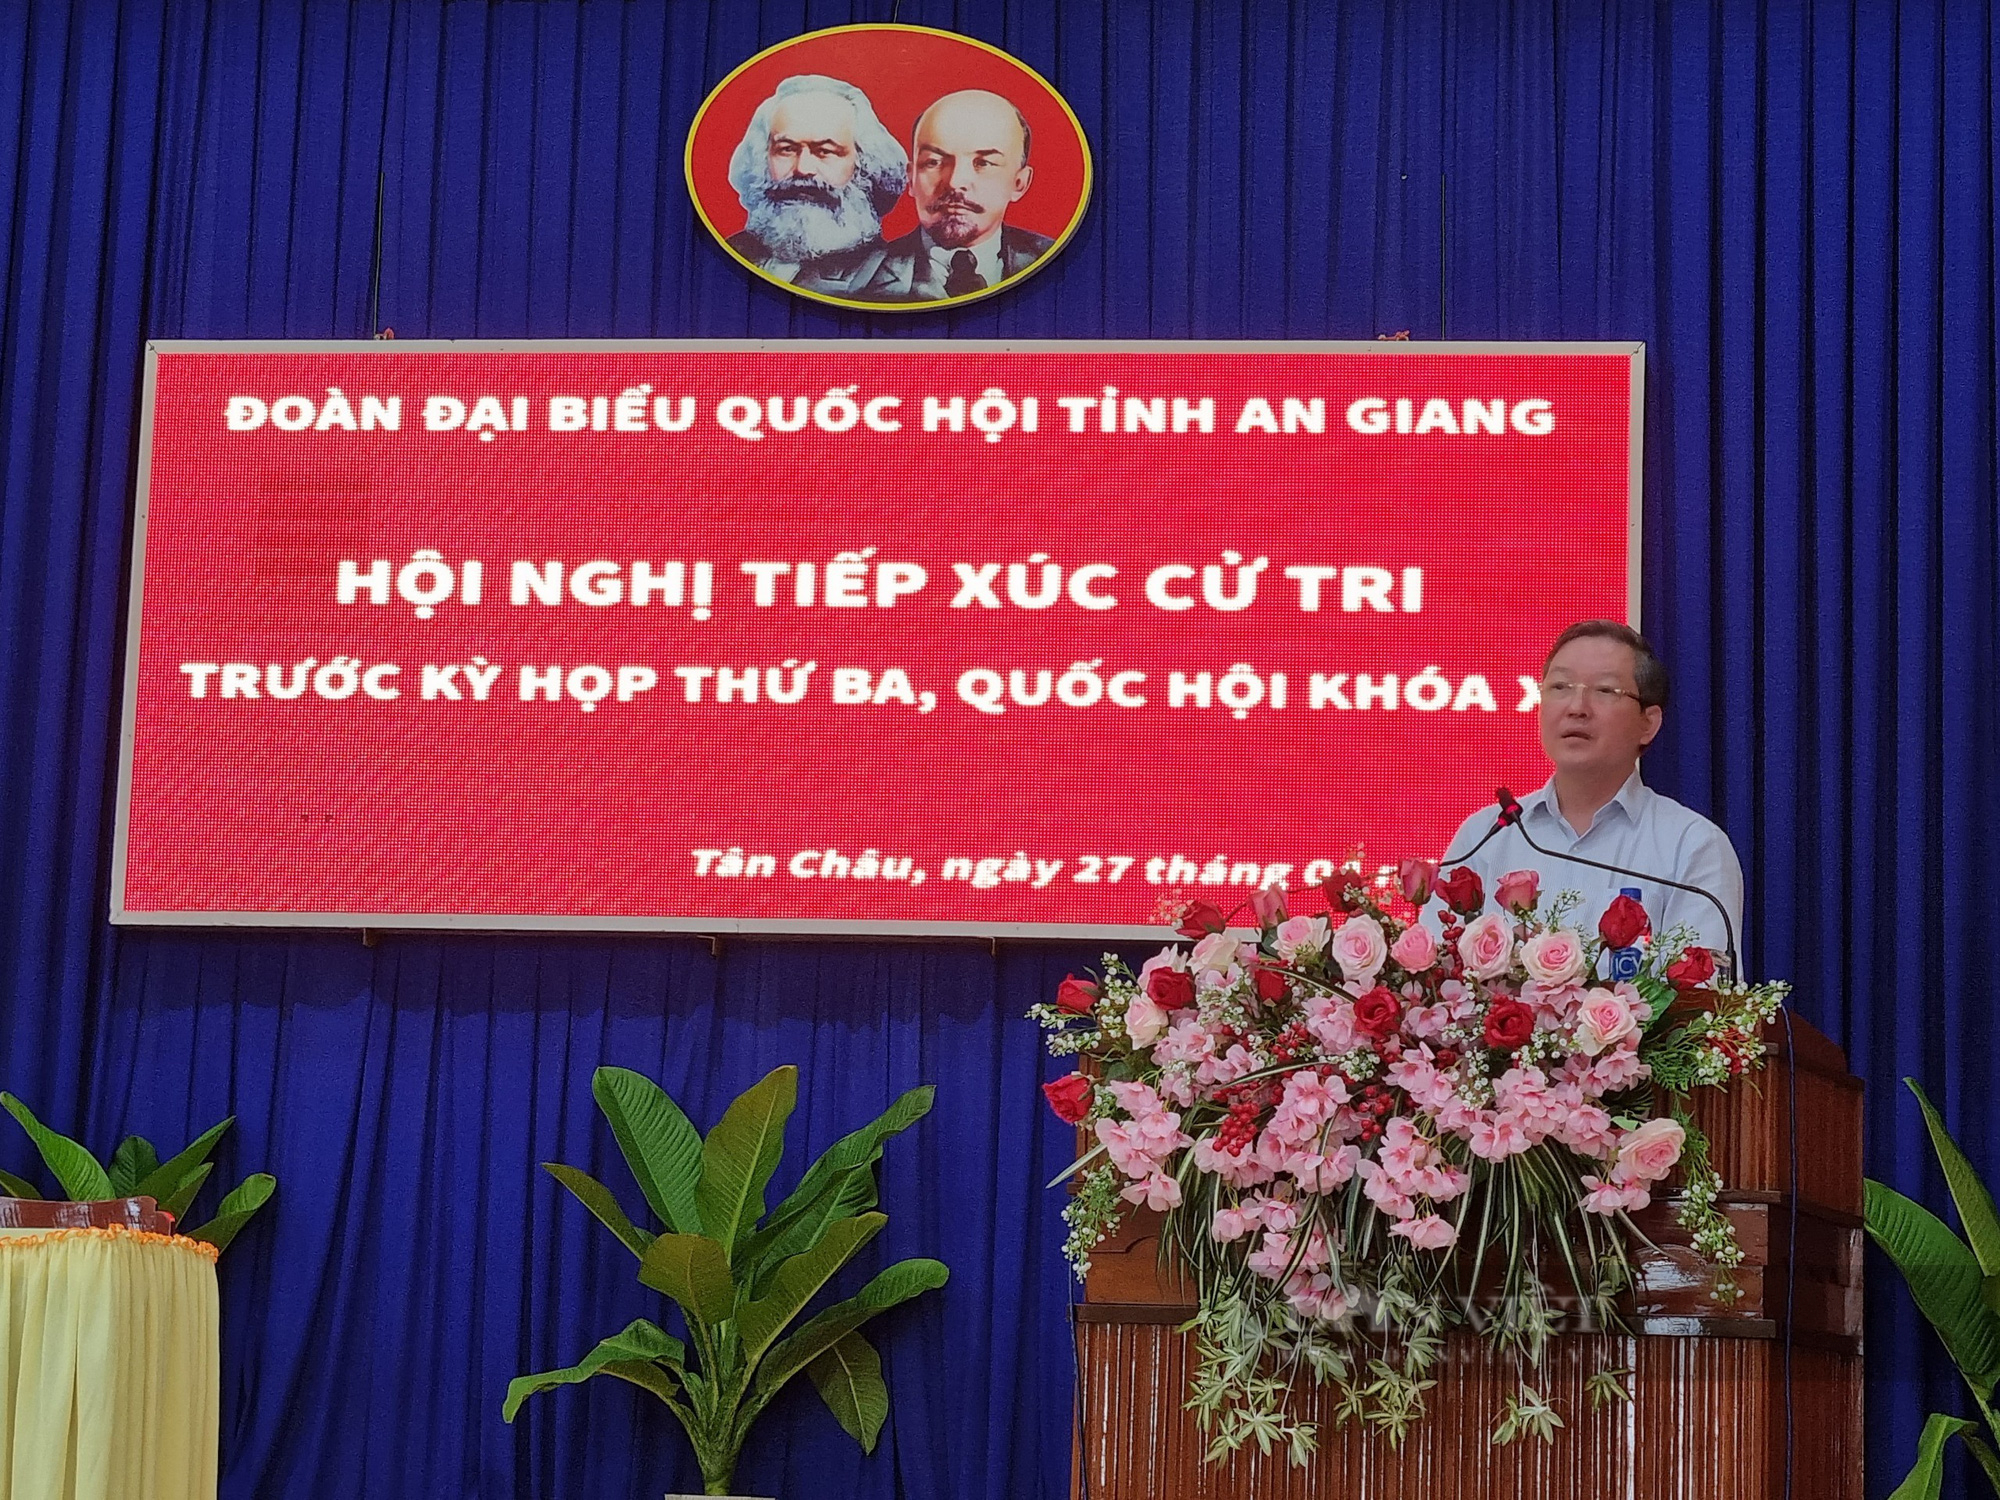 Chủ tịch Hội NDVN Lương Quốc Đoàn: Sẽ kiến nghị ý kiến cử tri lên Thủ tướng Chính phủ- Ảnh 4.